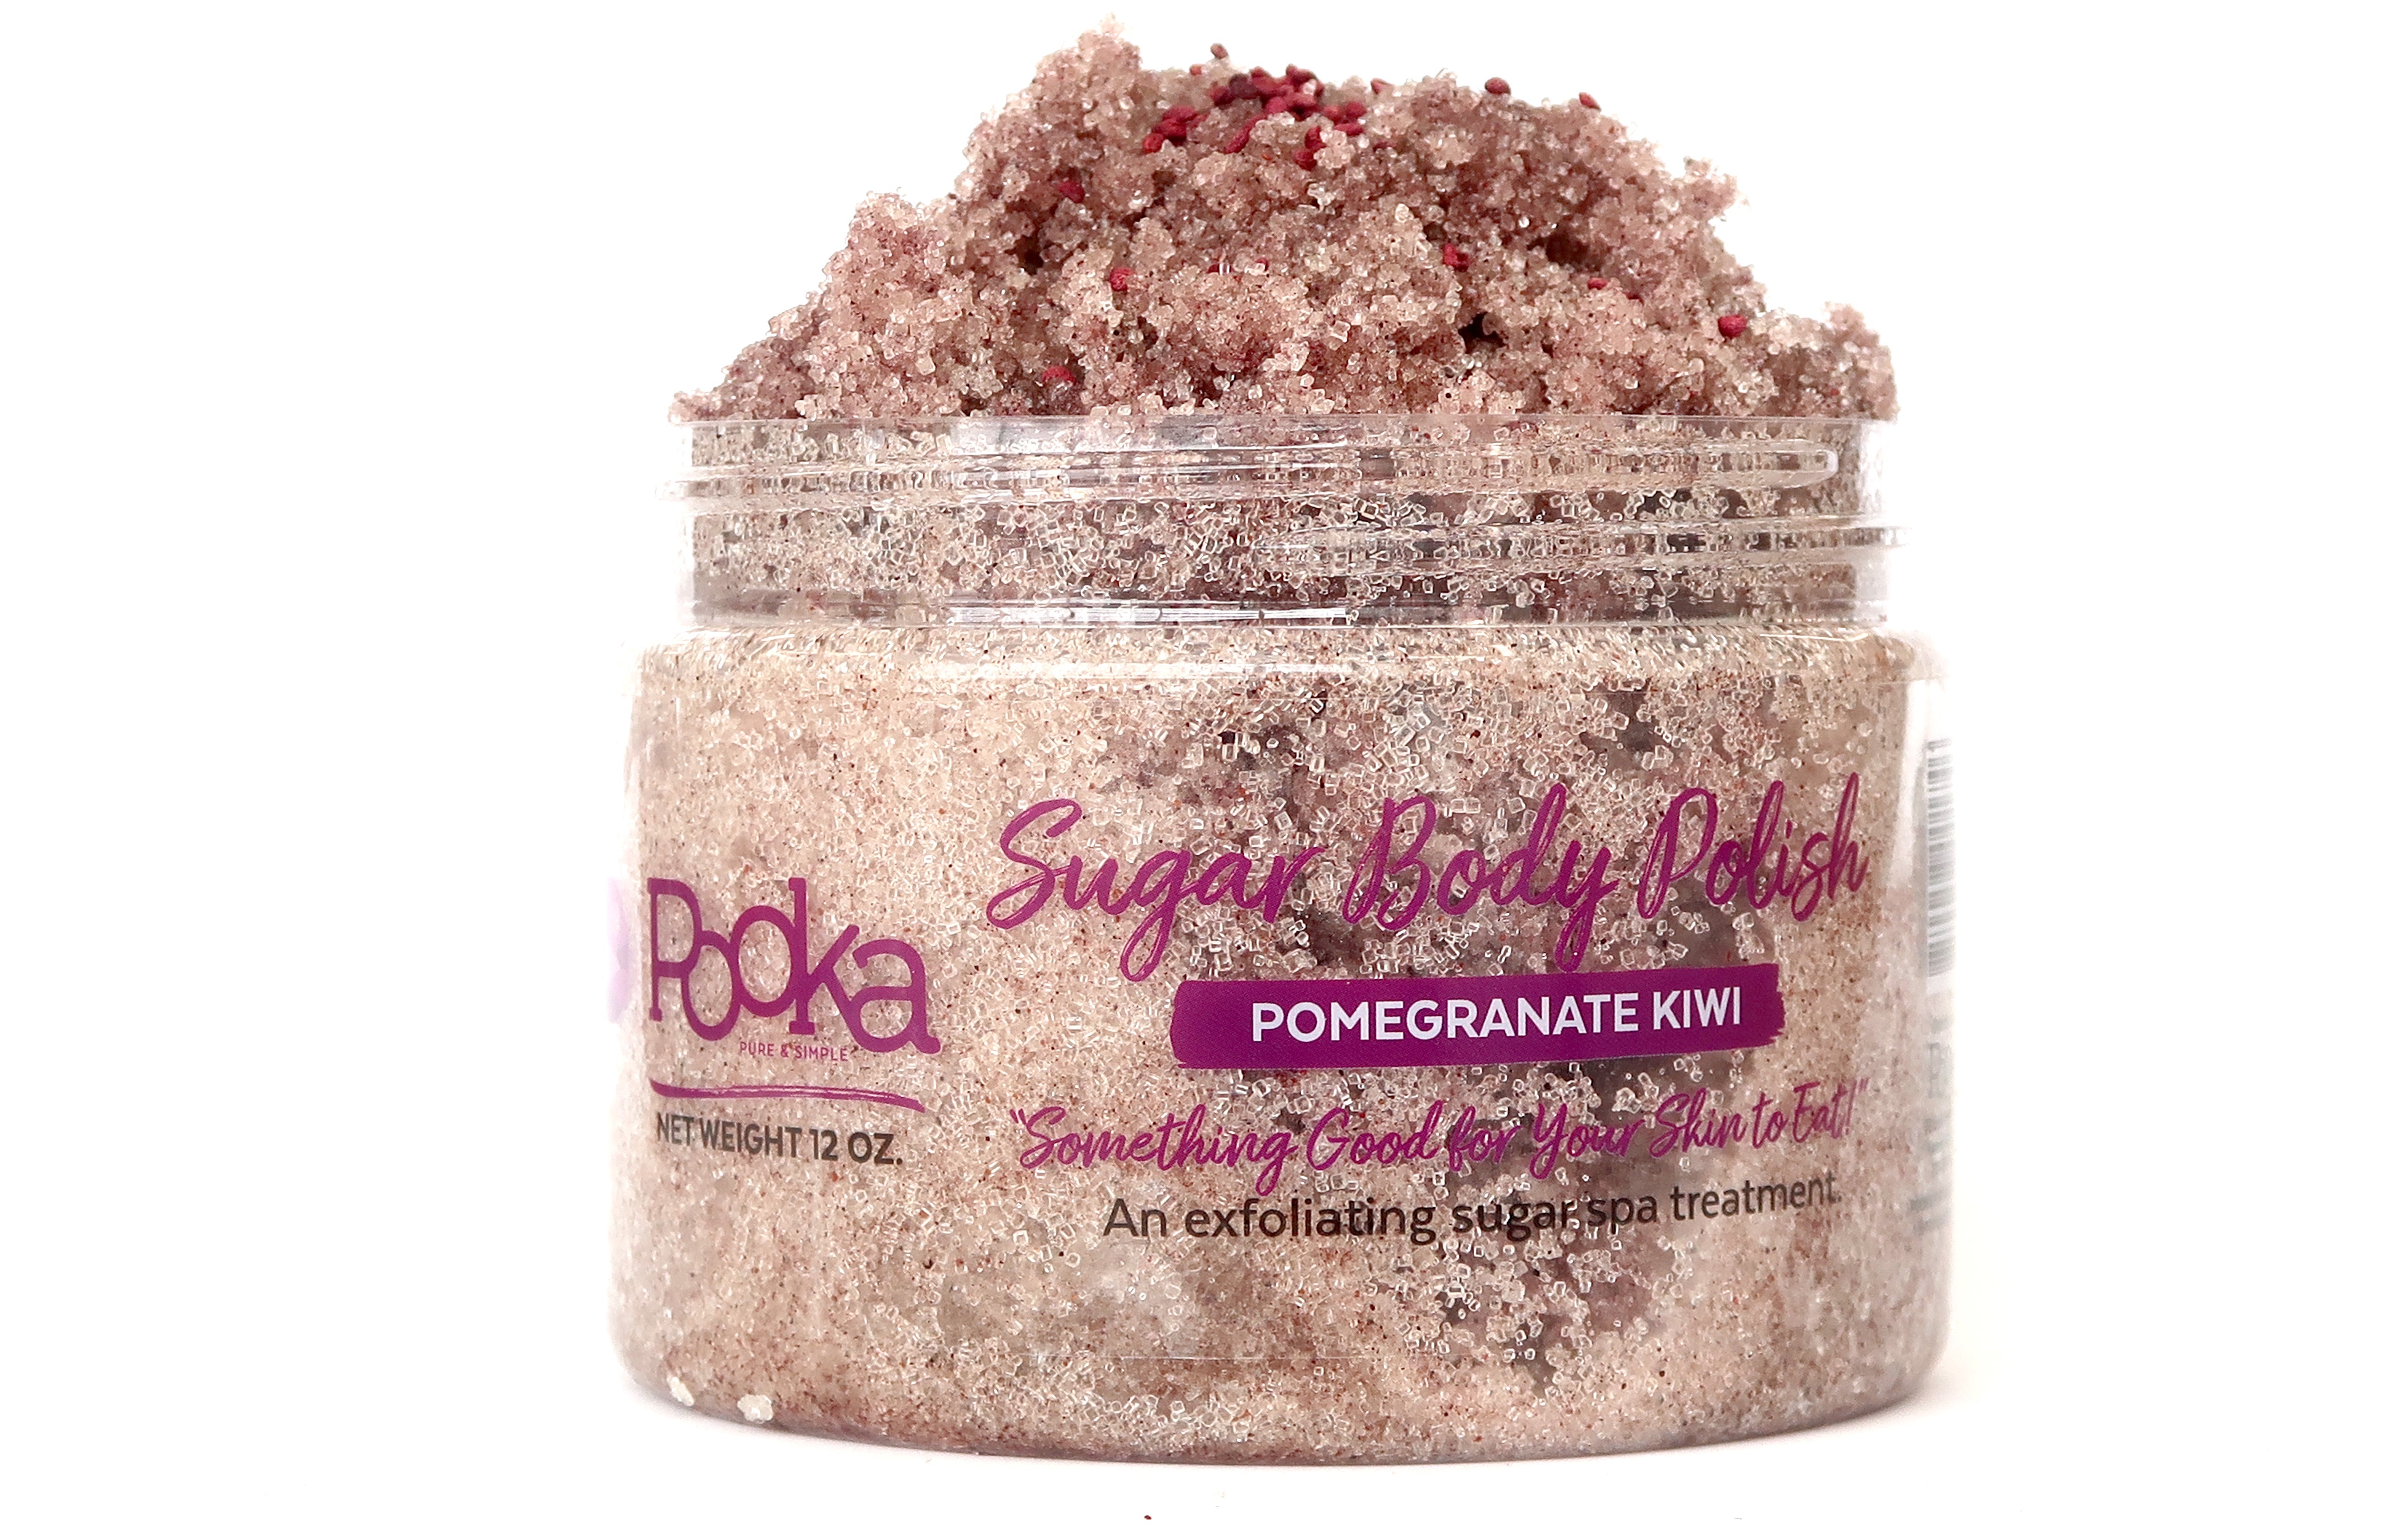 Pomegranate Kiwi Body Polish - Pooka Pure and Simple